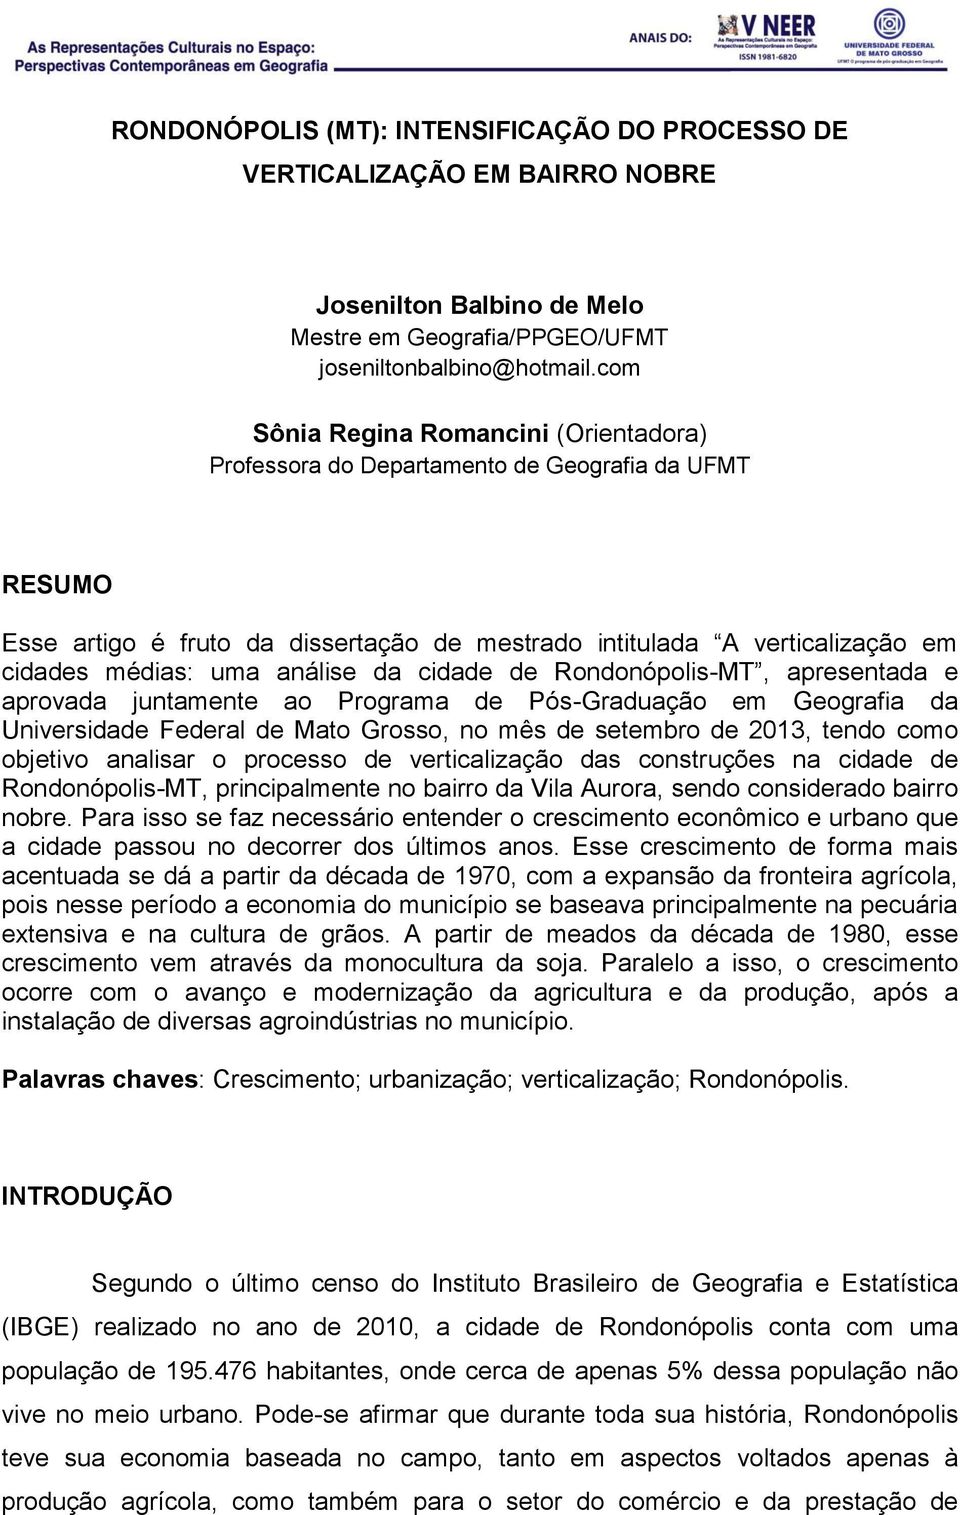 análise da cidade de Rondonópolis-MT, apresentada e aprovada juntamente ao Programa de Pós-Graduação em Geografia da Universidade Federal de Mato Grosso, no mês de setembro de 2013, tendo como